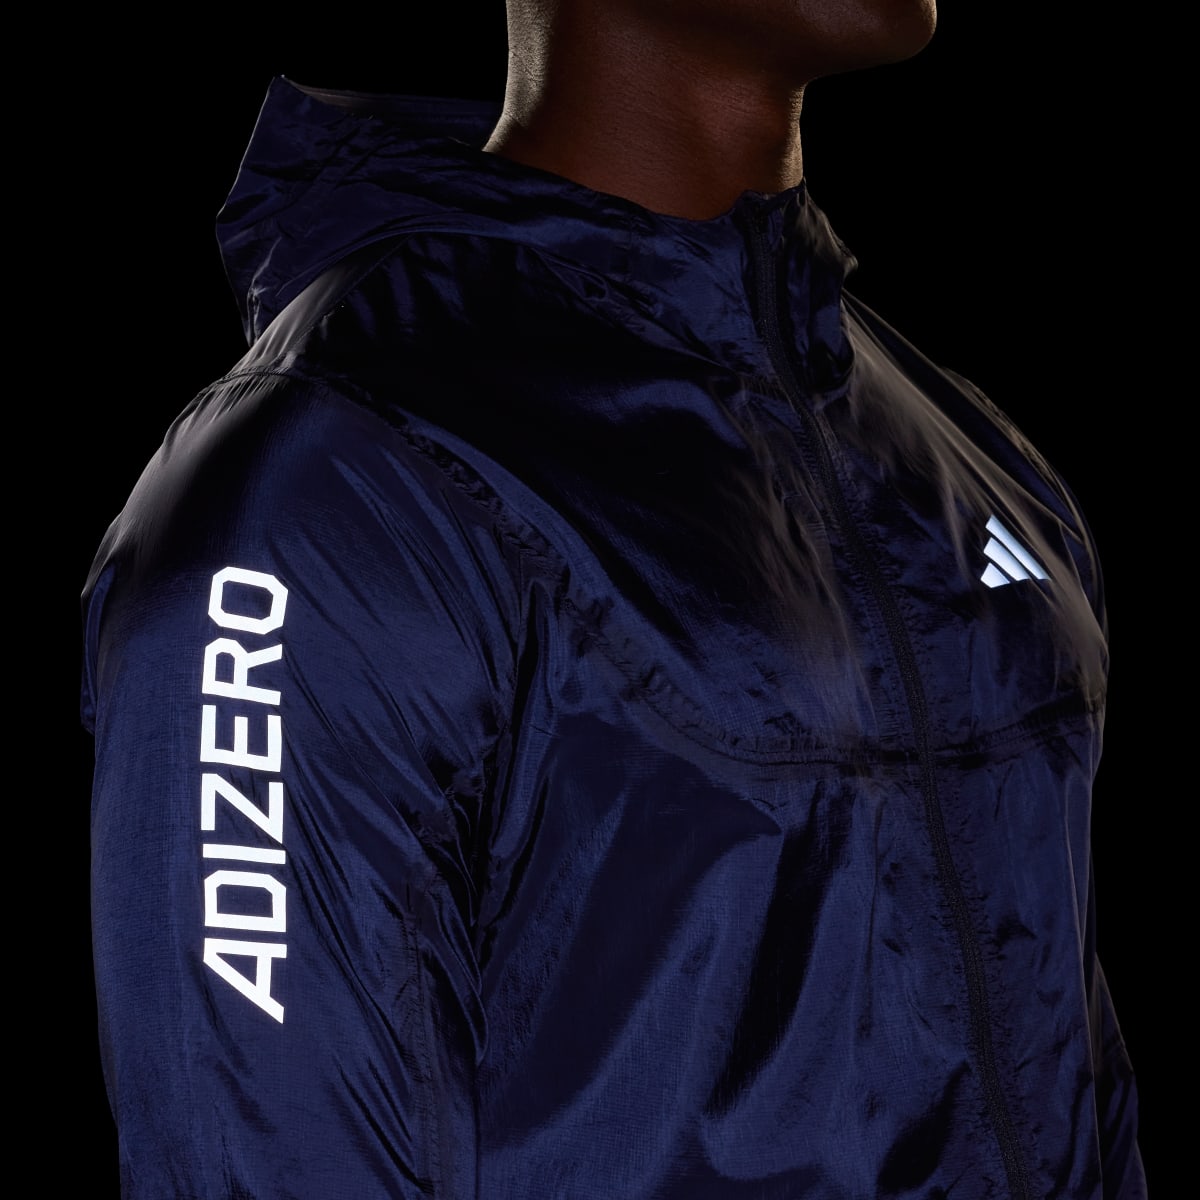 Adidas Adizero Running Lightweight Jacket. 7